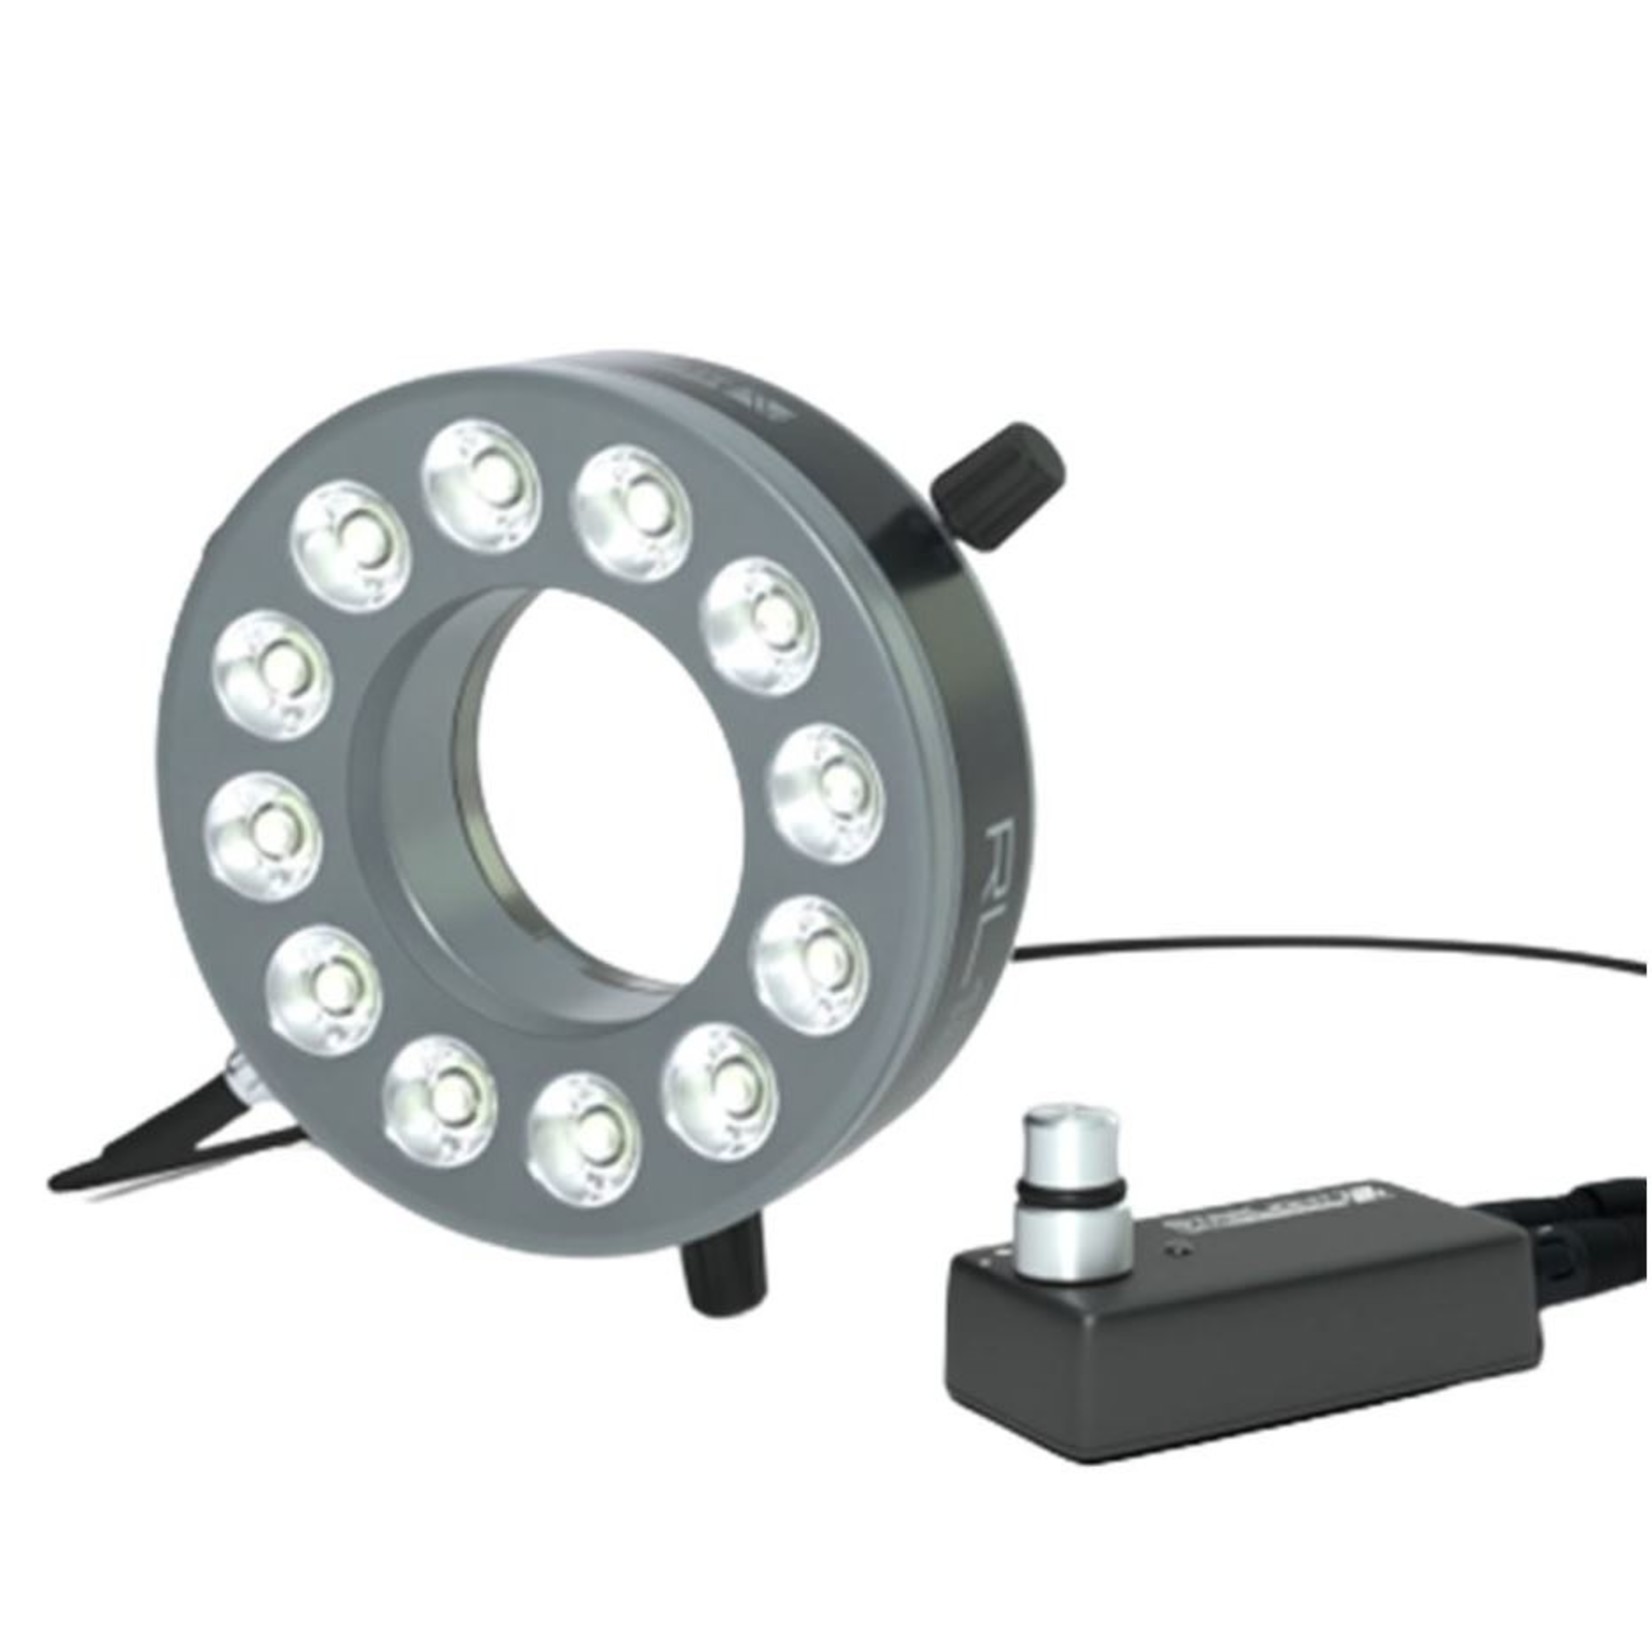 Lichtstarkes Hochleistungs-Ringlicht für Arbeitsabstand 50 mm bis 800 mm - optimal ca. 140 mm